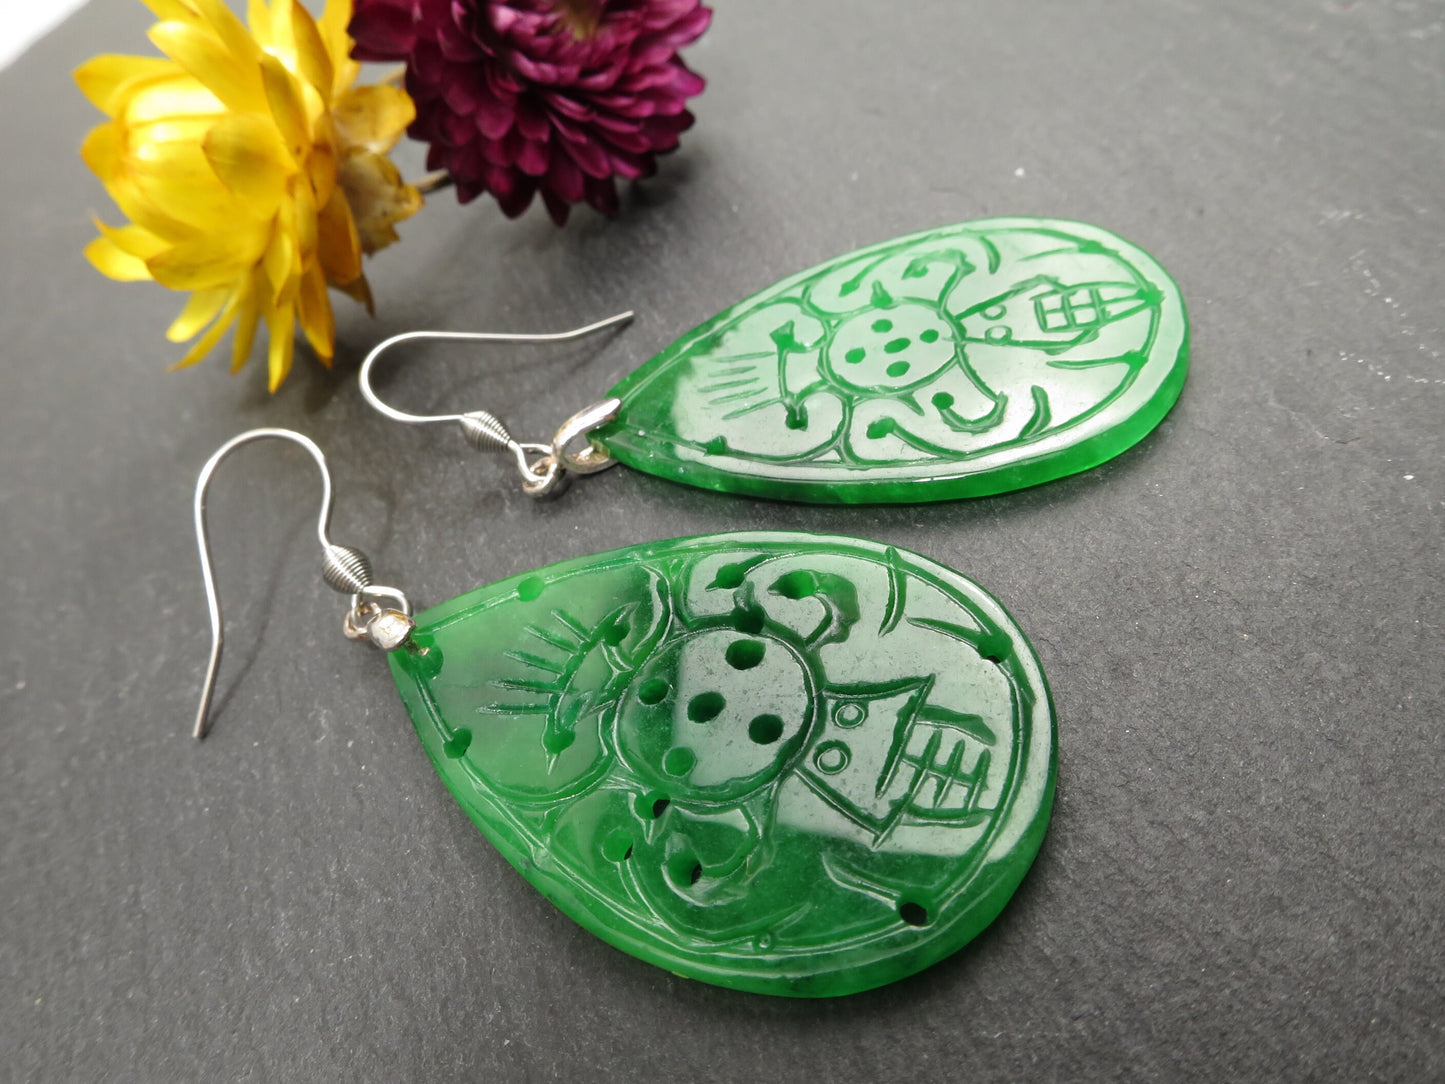 Fantastische Ohrringe aus handgravierter Jade grün Farbe Sterling Silber 925 Ohrhaken Edelstahl beidseitig aufwendig graviert